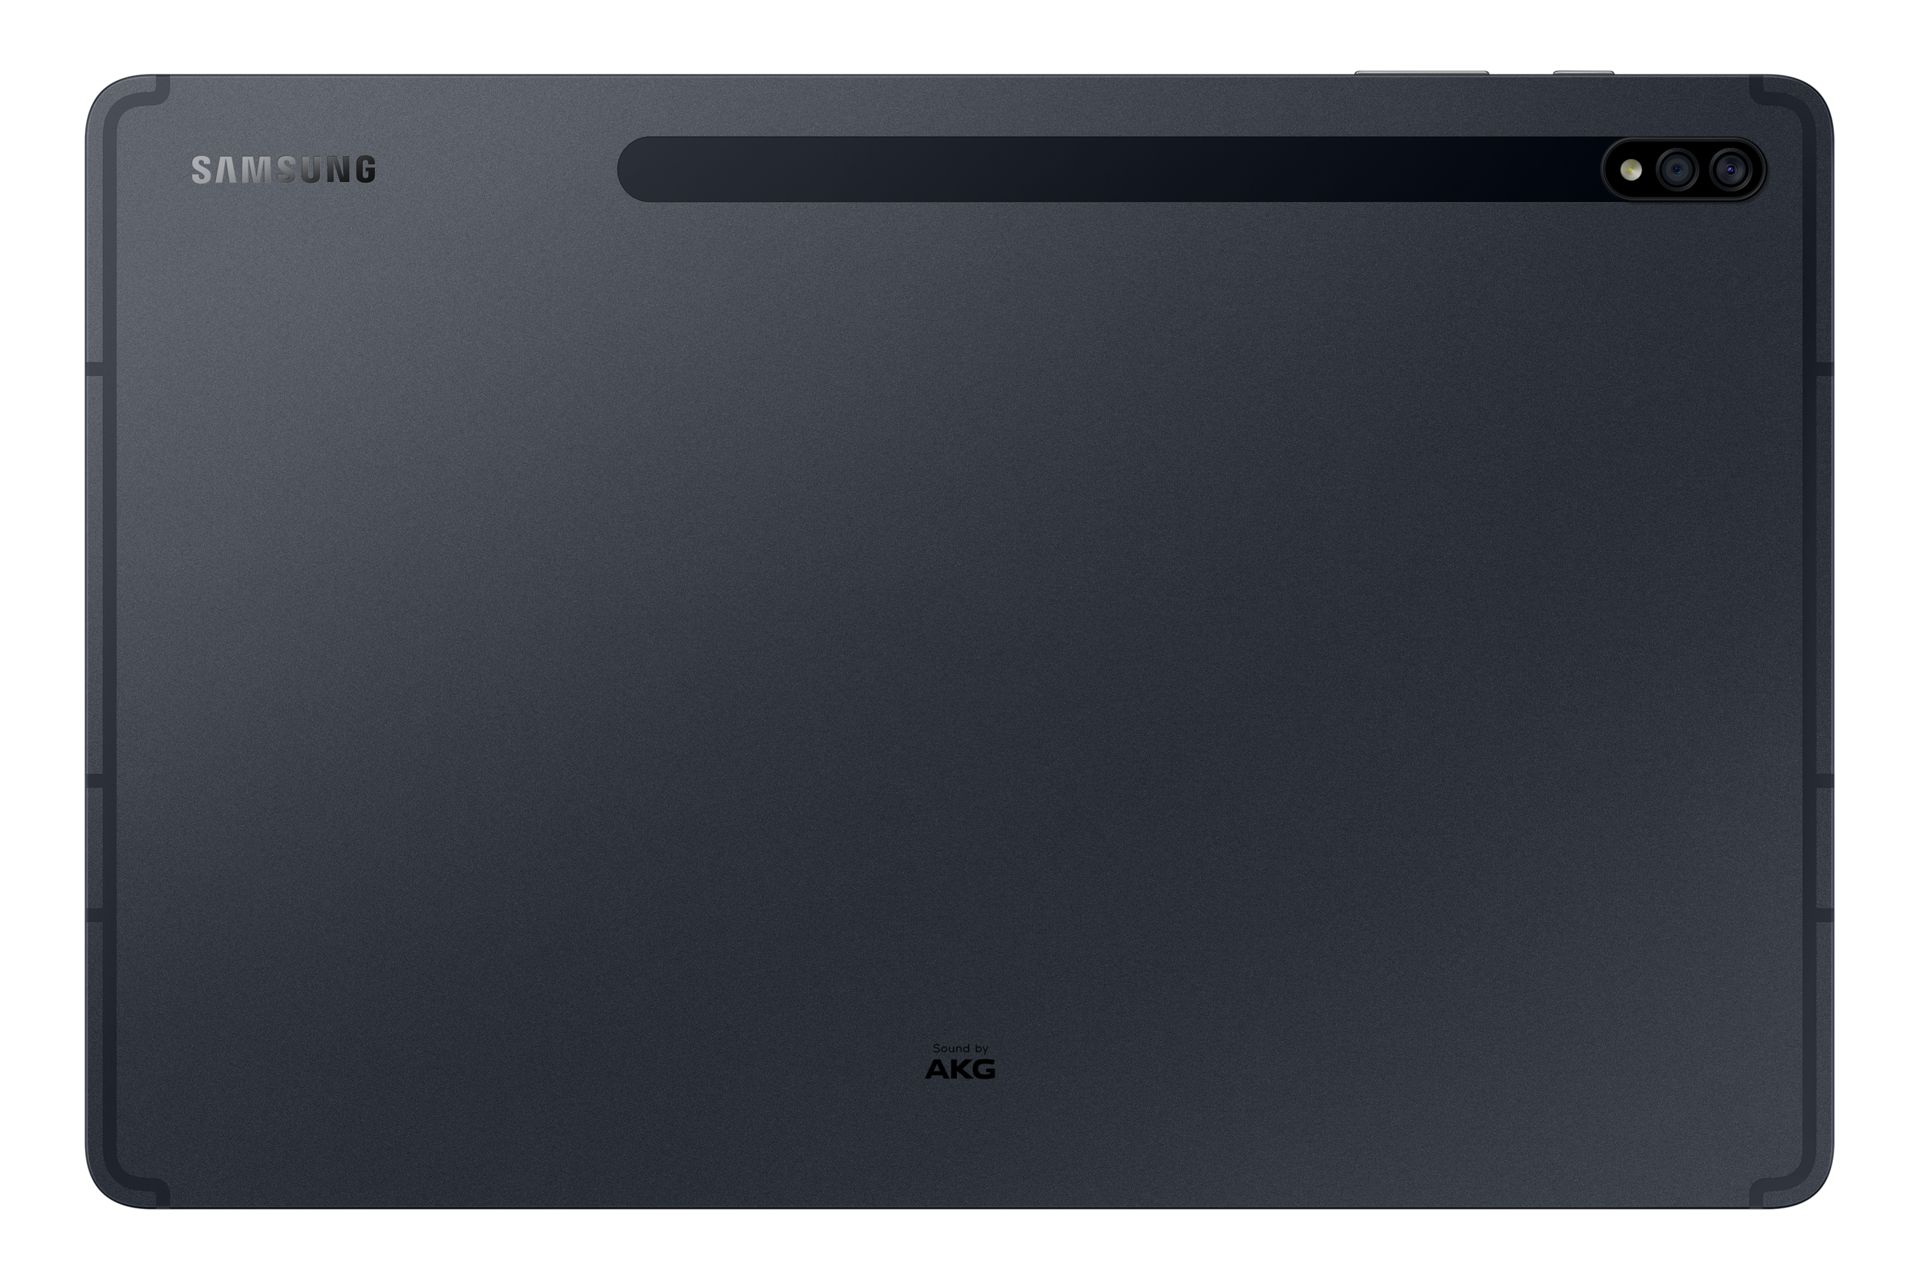 Galaxy Tab S7+(SM-T970) Mystic Black